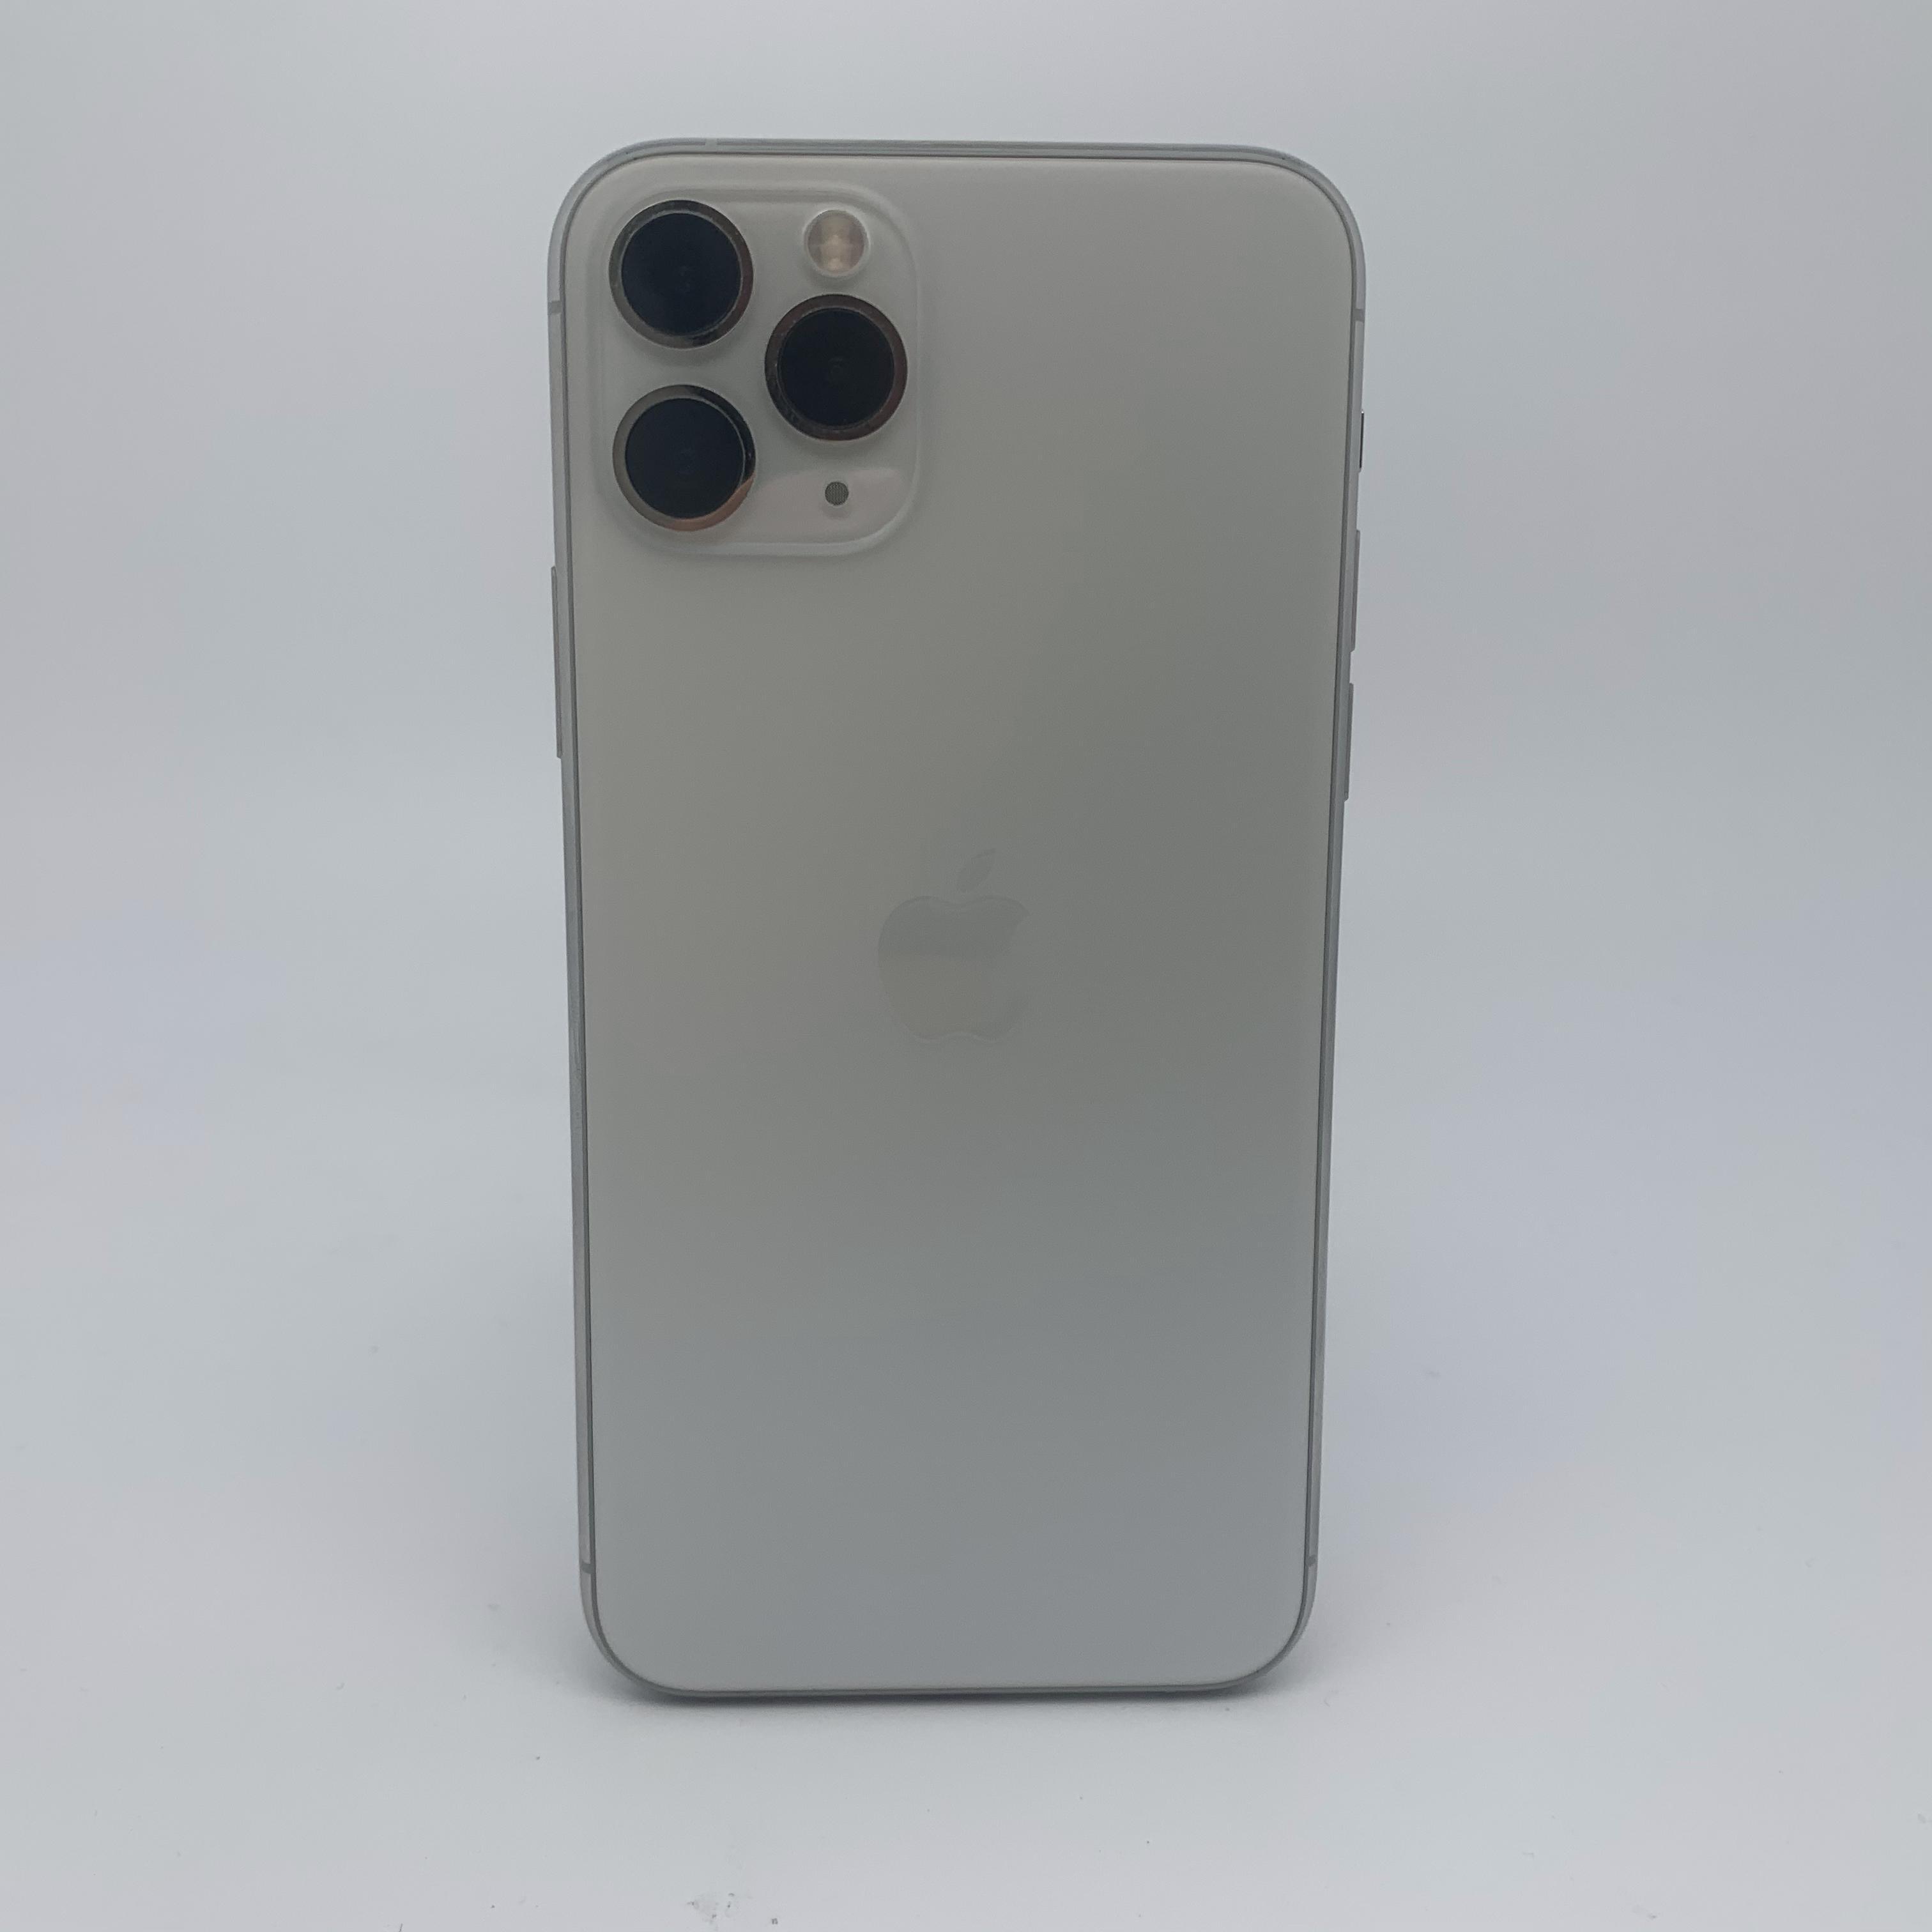 苹果【iPhone 11 Pro Max】4G全网通 银色 256G 国行 9成新 